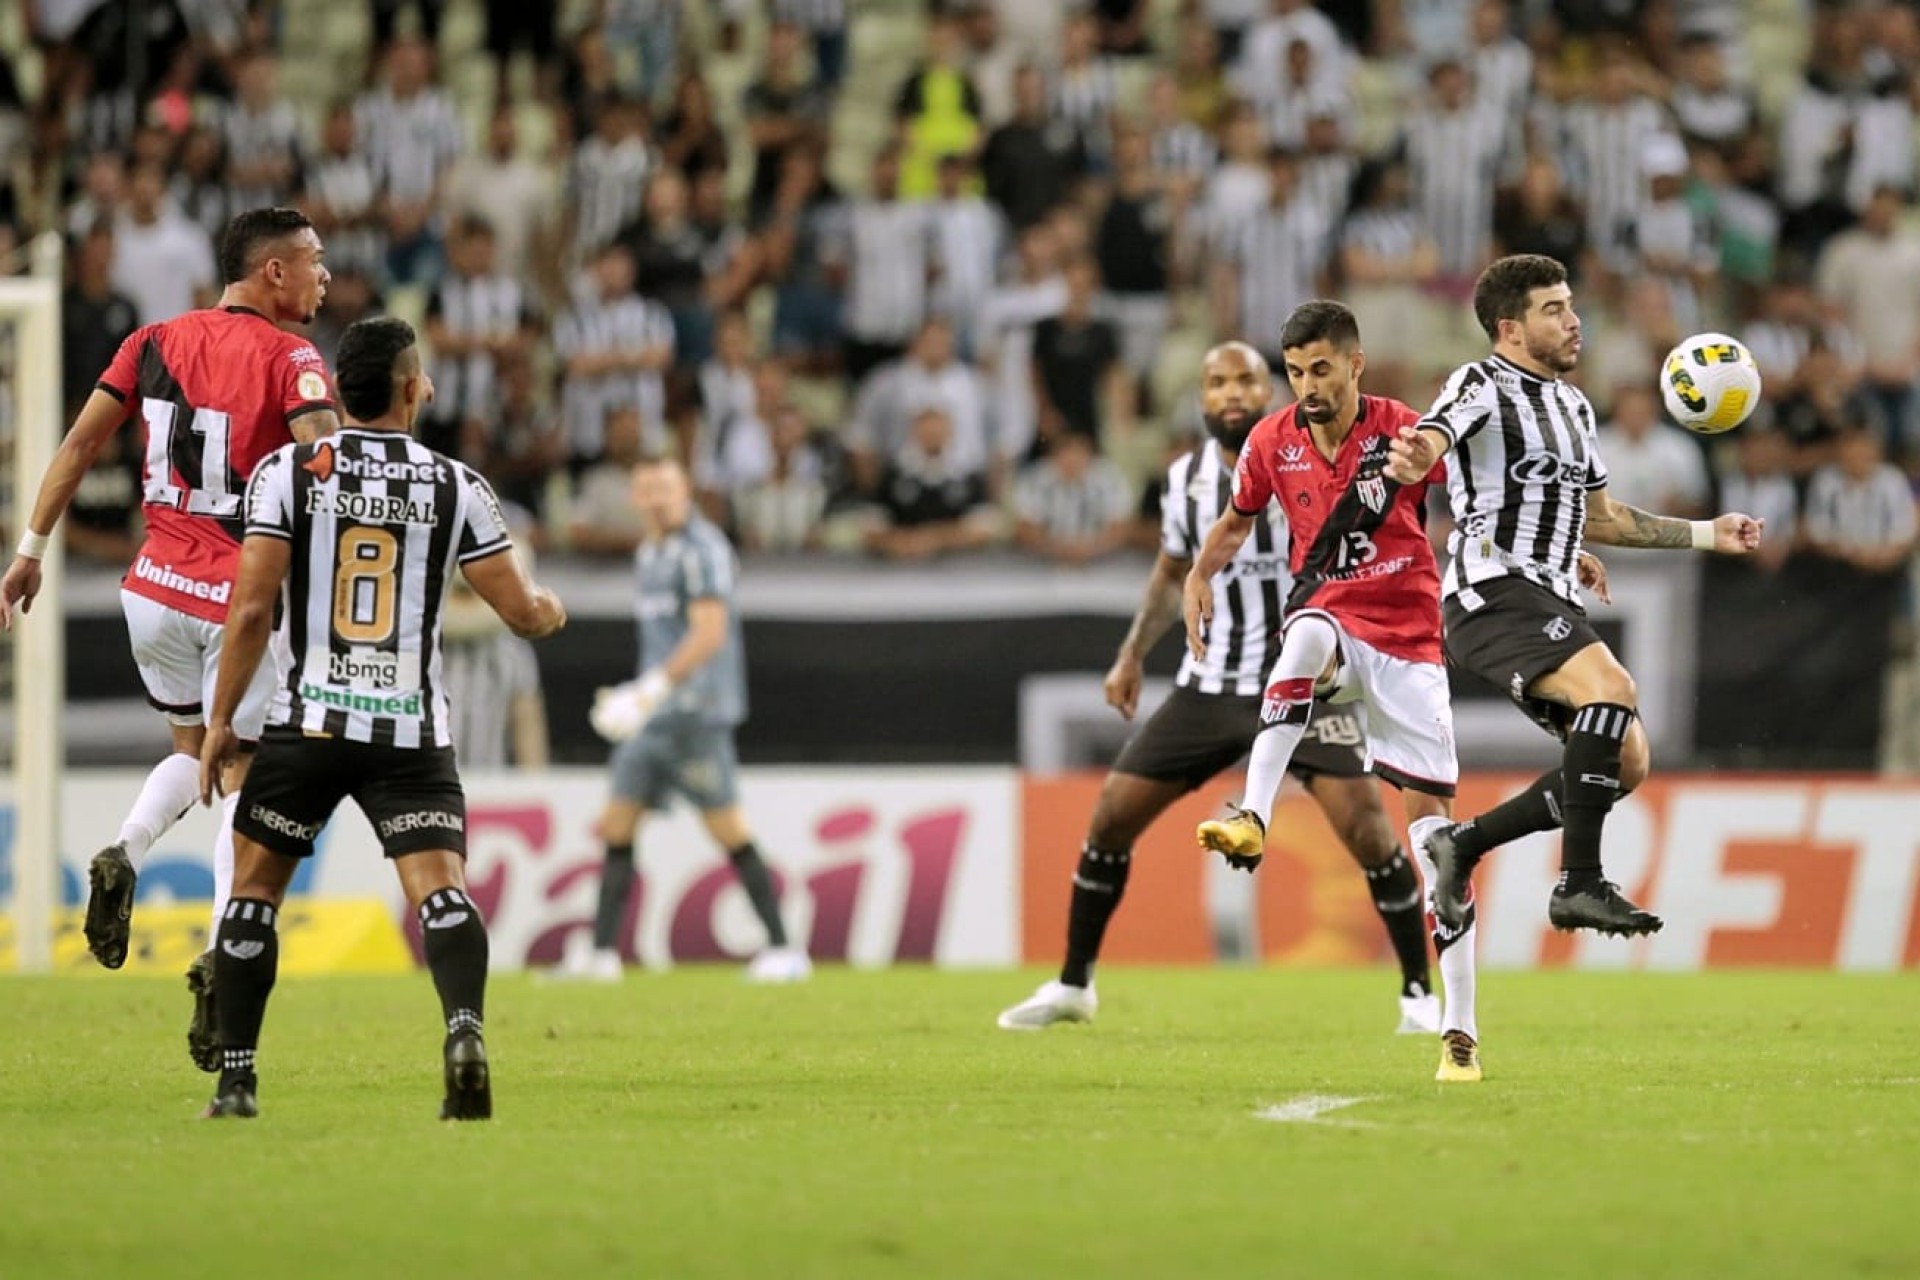 Ceará x Atlético-GO, na Arena Castelão, válido pela 14ª rodada do Brasileirão Série A (Foto: Aurelio Alves/O POVO)